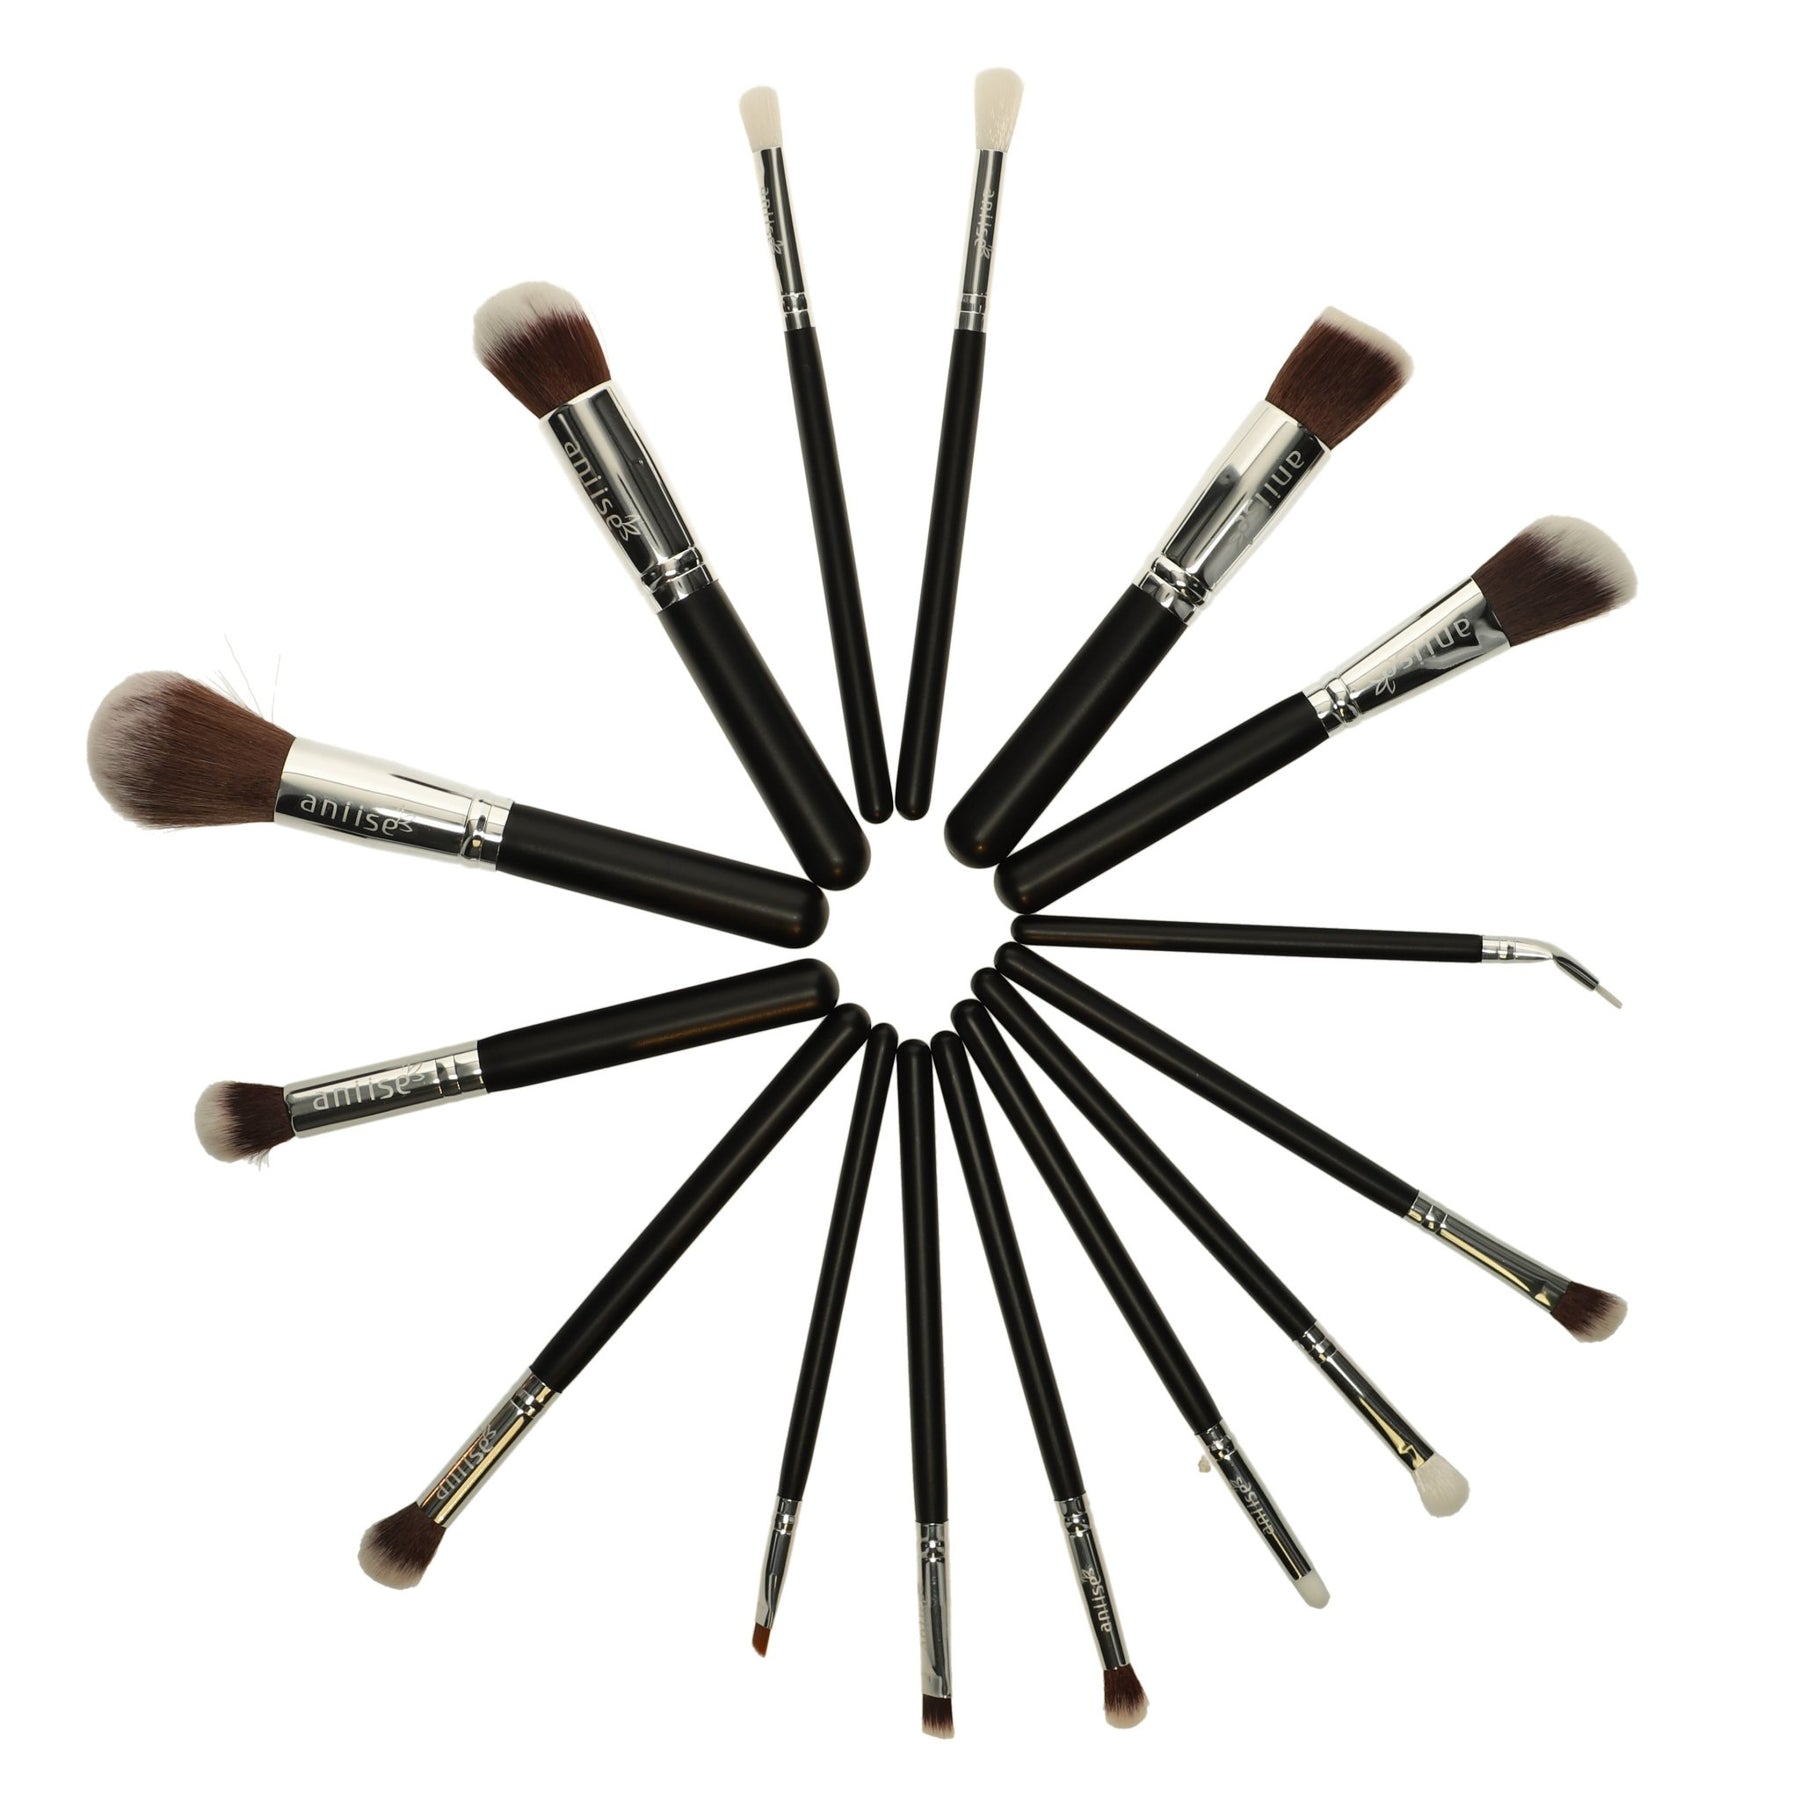 Aniise Oval Makeup Brush Set